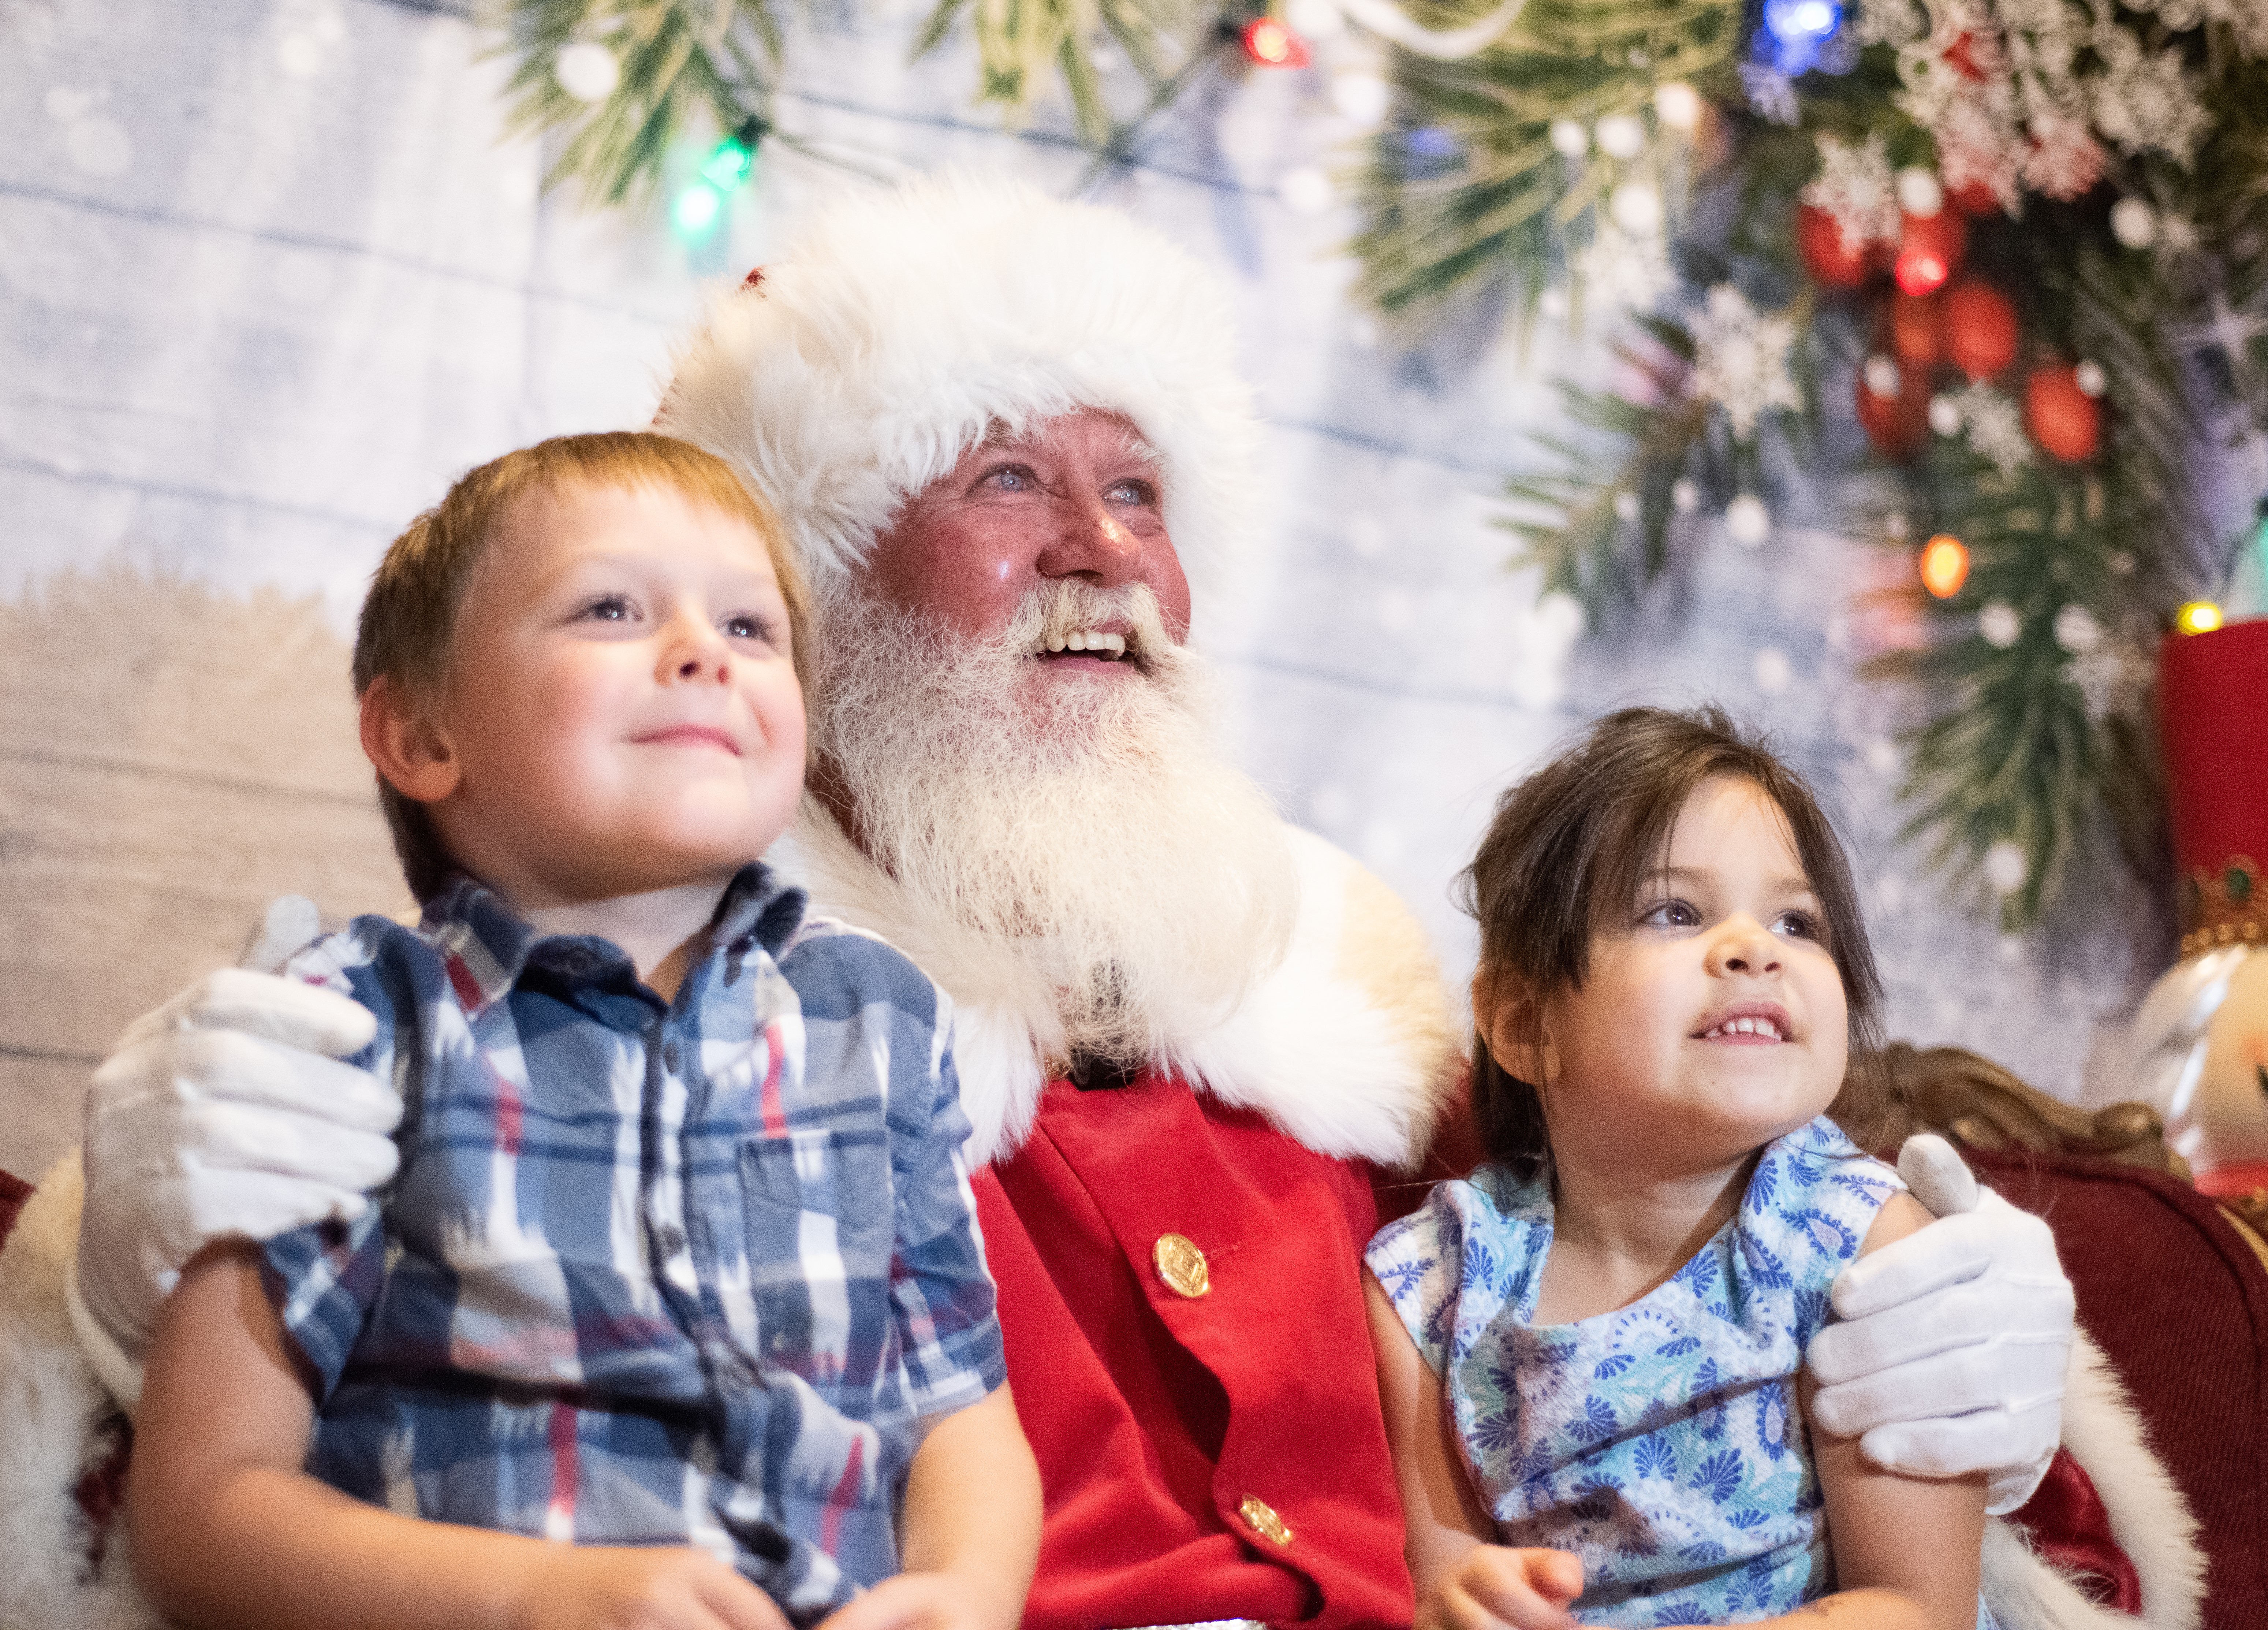 Children with Santa Claus